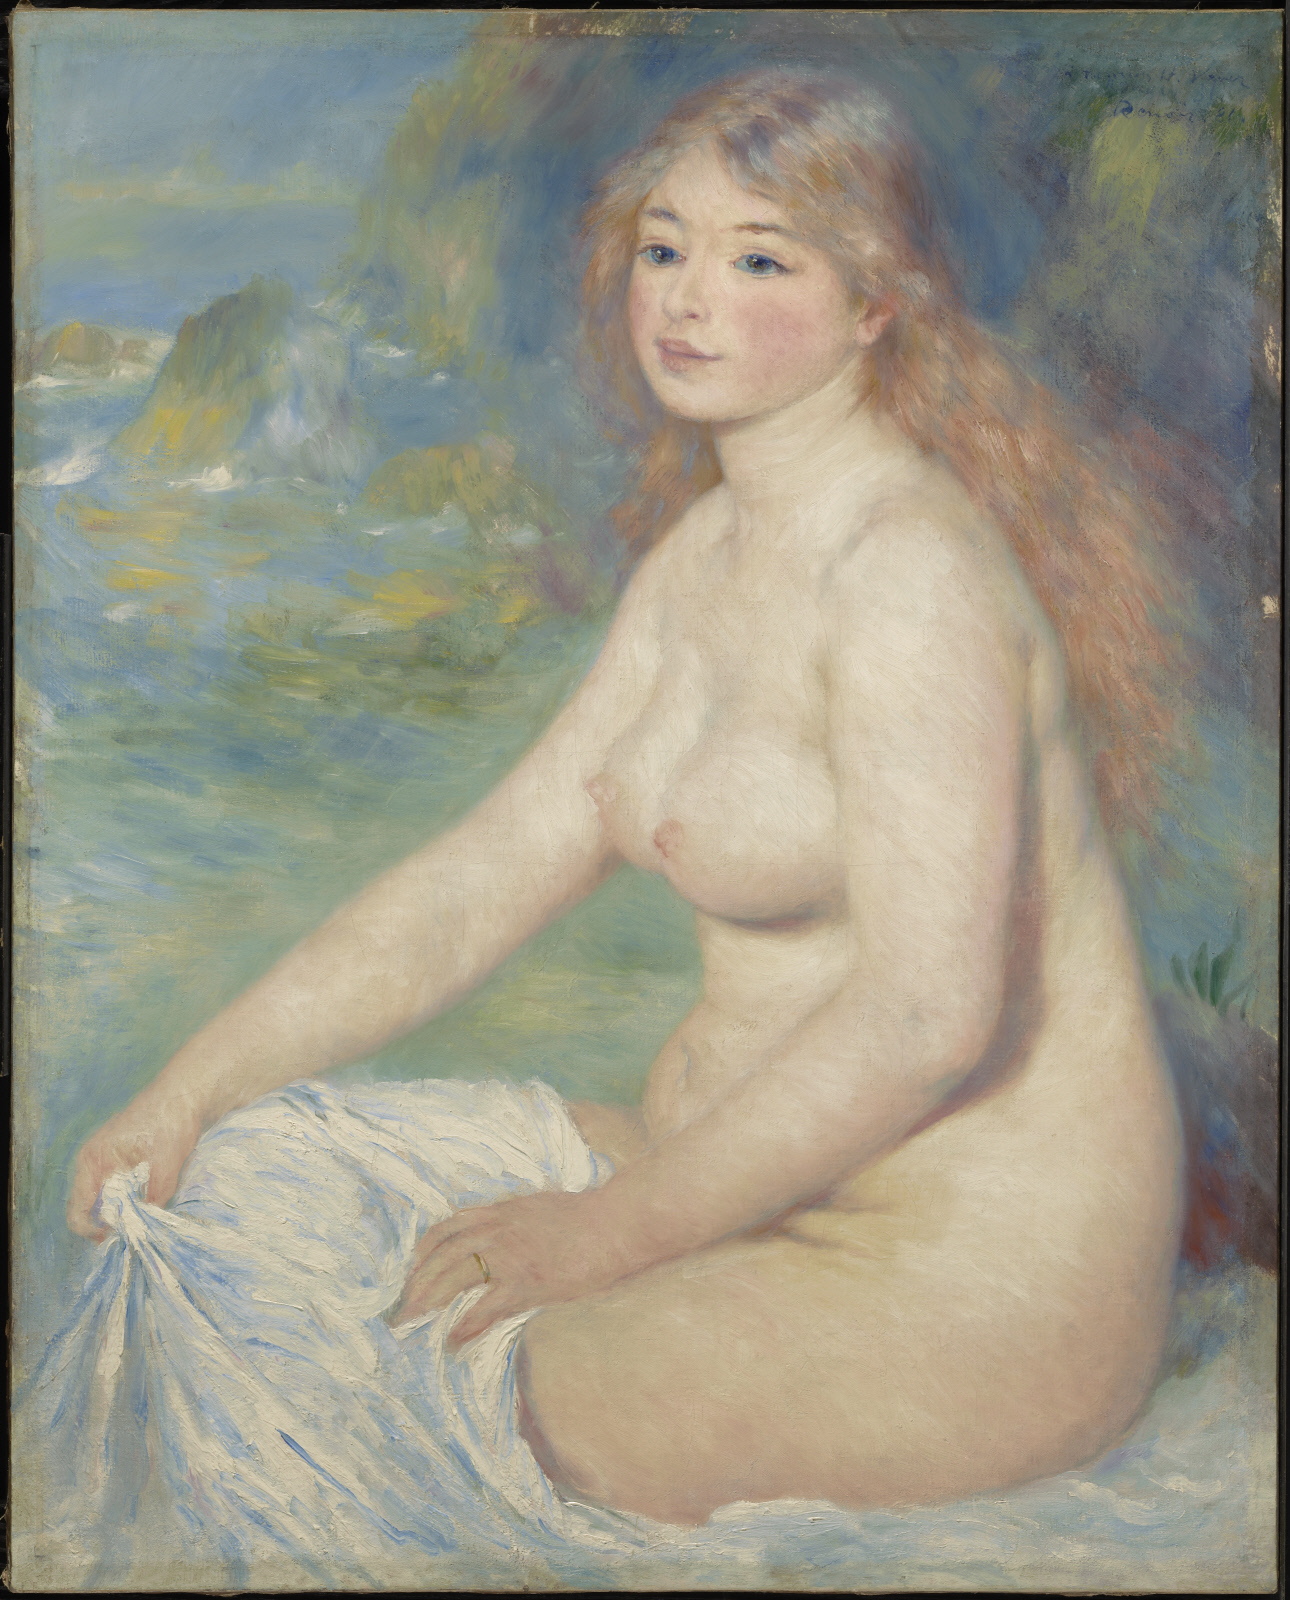 Blonde Badende by Pierre-Auguste Renoir - 1881 - 81,6 x 65,4 cm The Clark